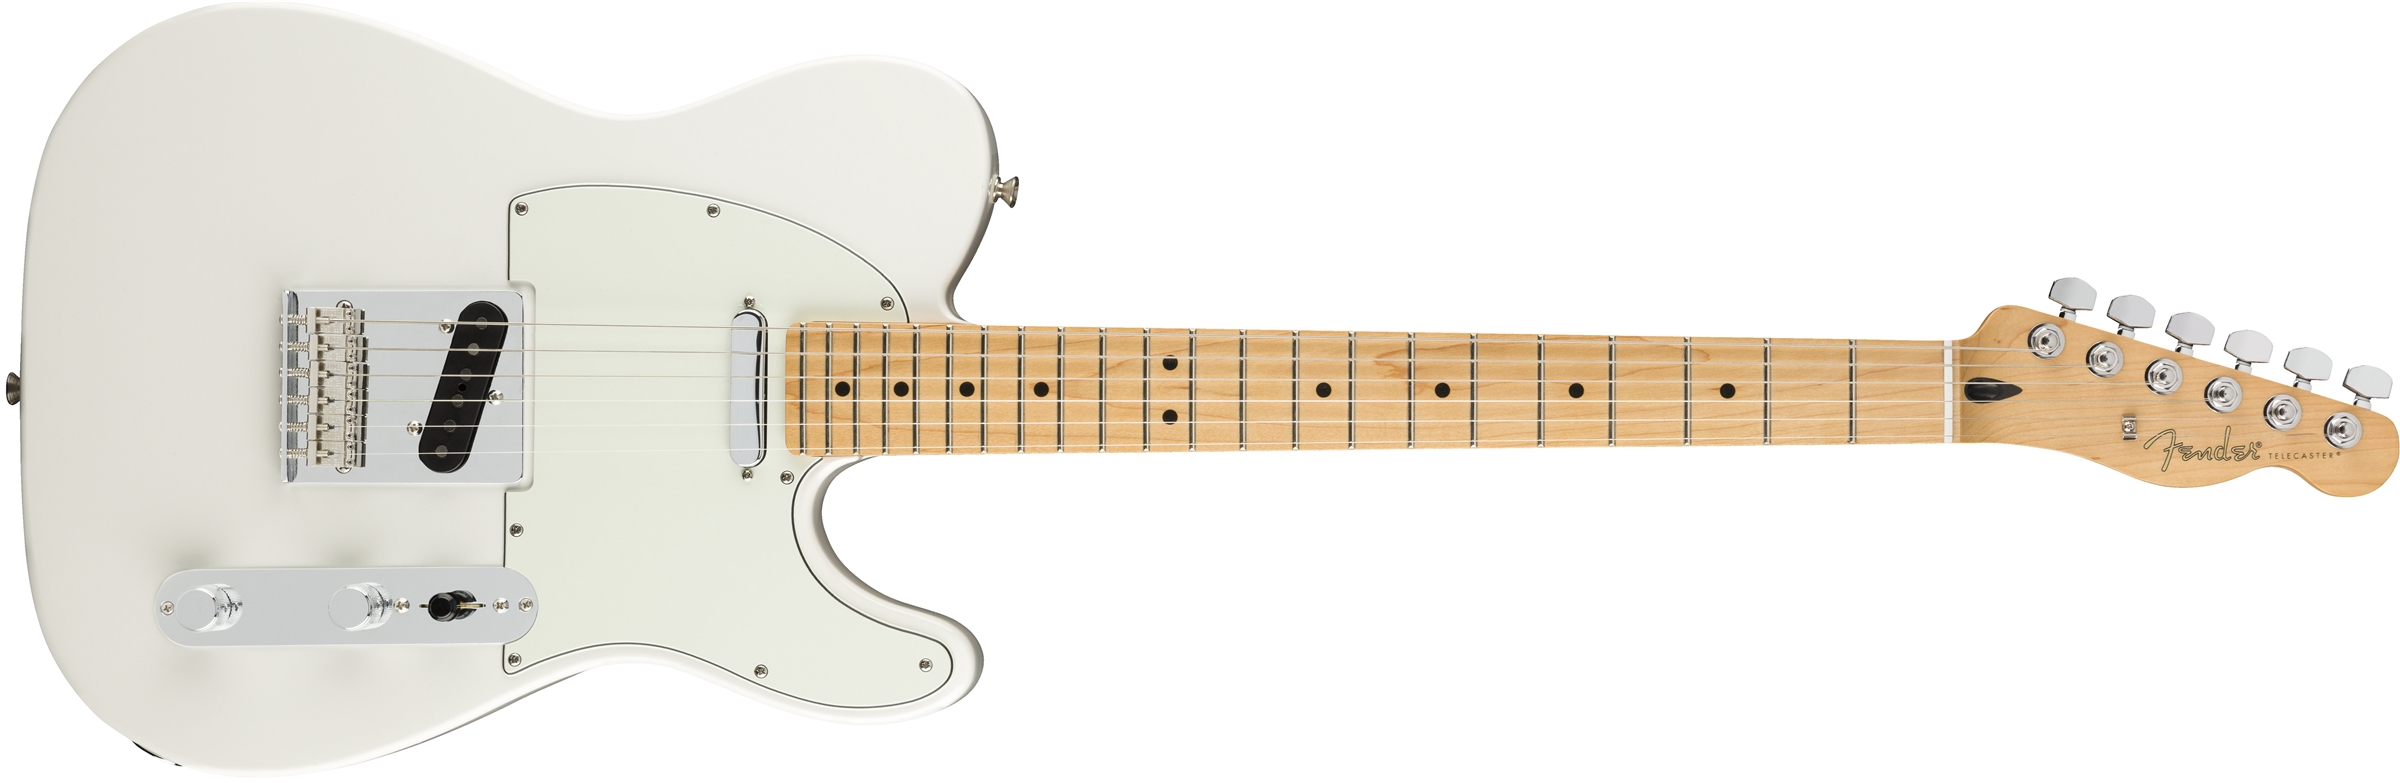 Fender Tele Player Mex Mn - Polar White - E-Gitarre in Teleform - Variation 1